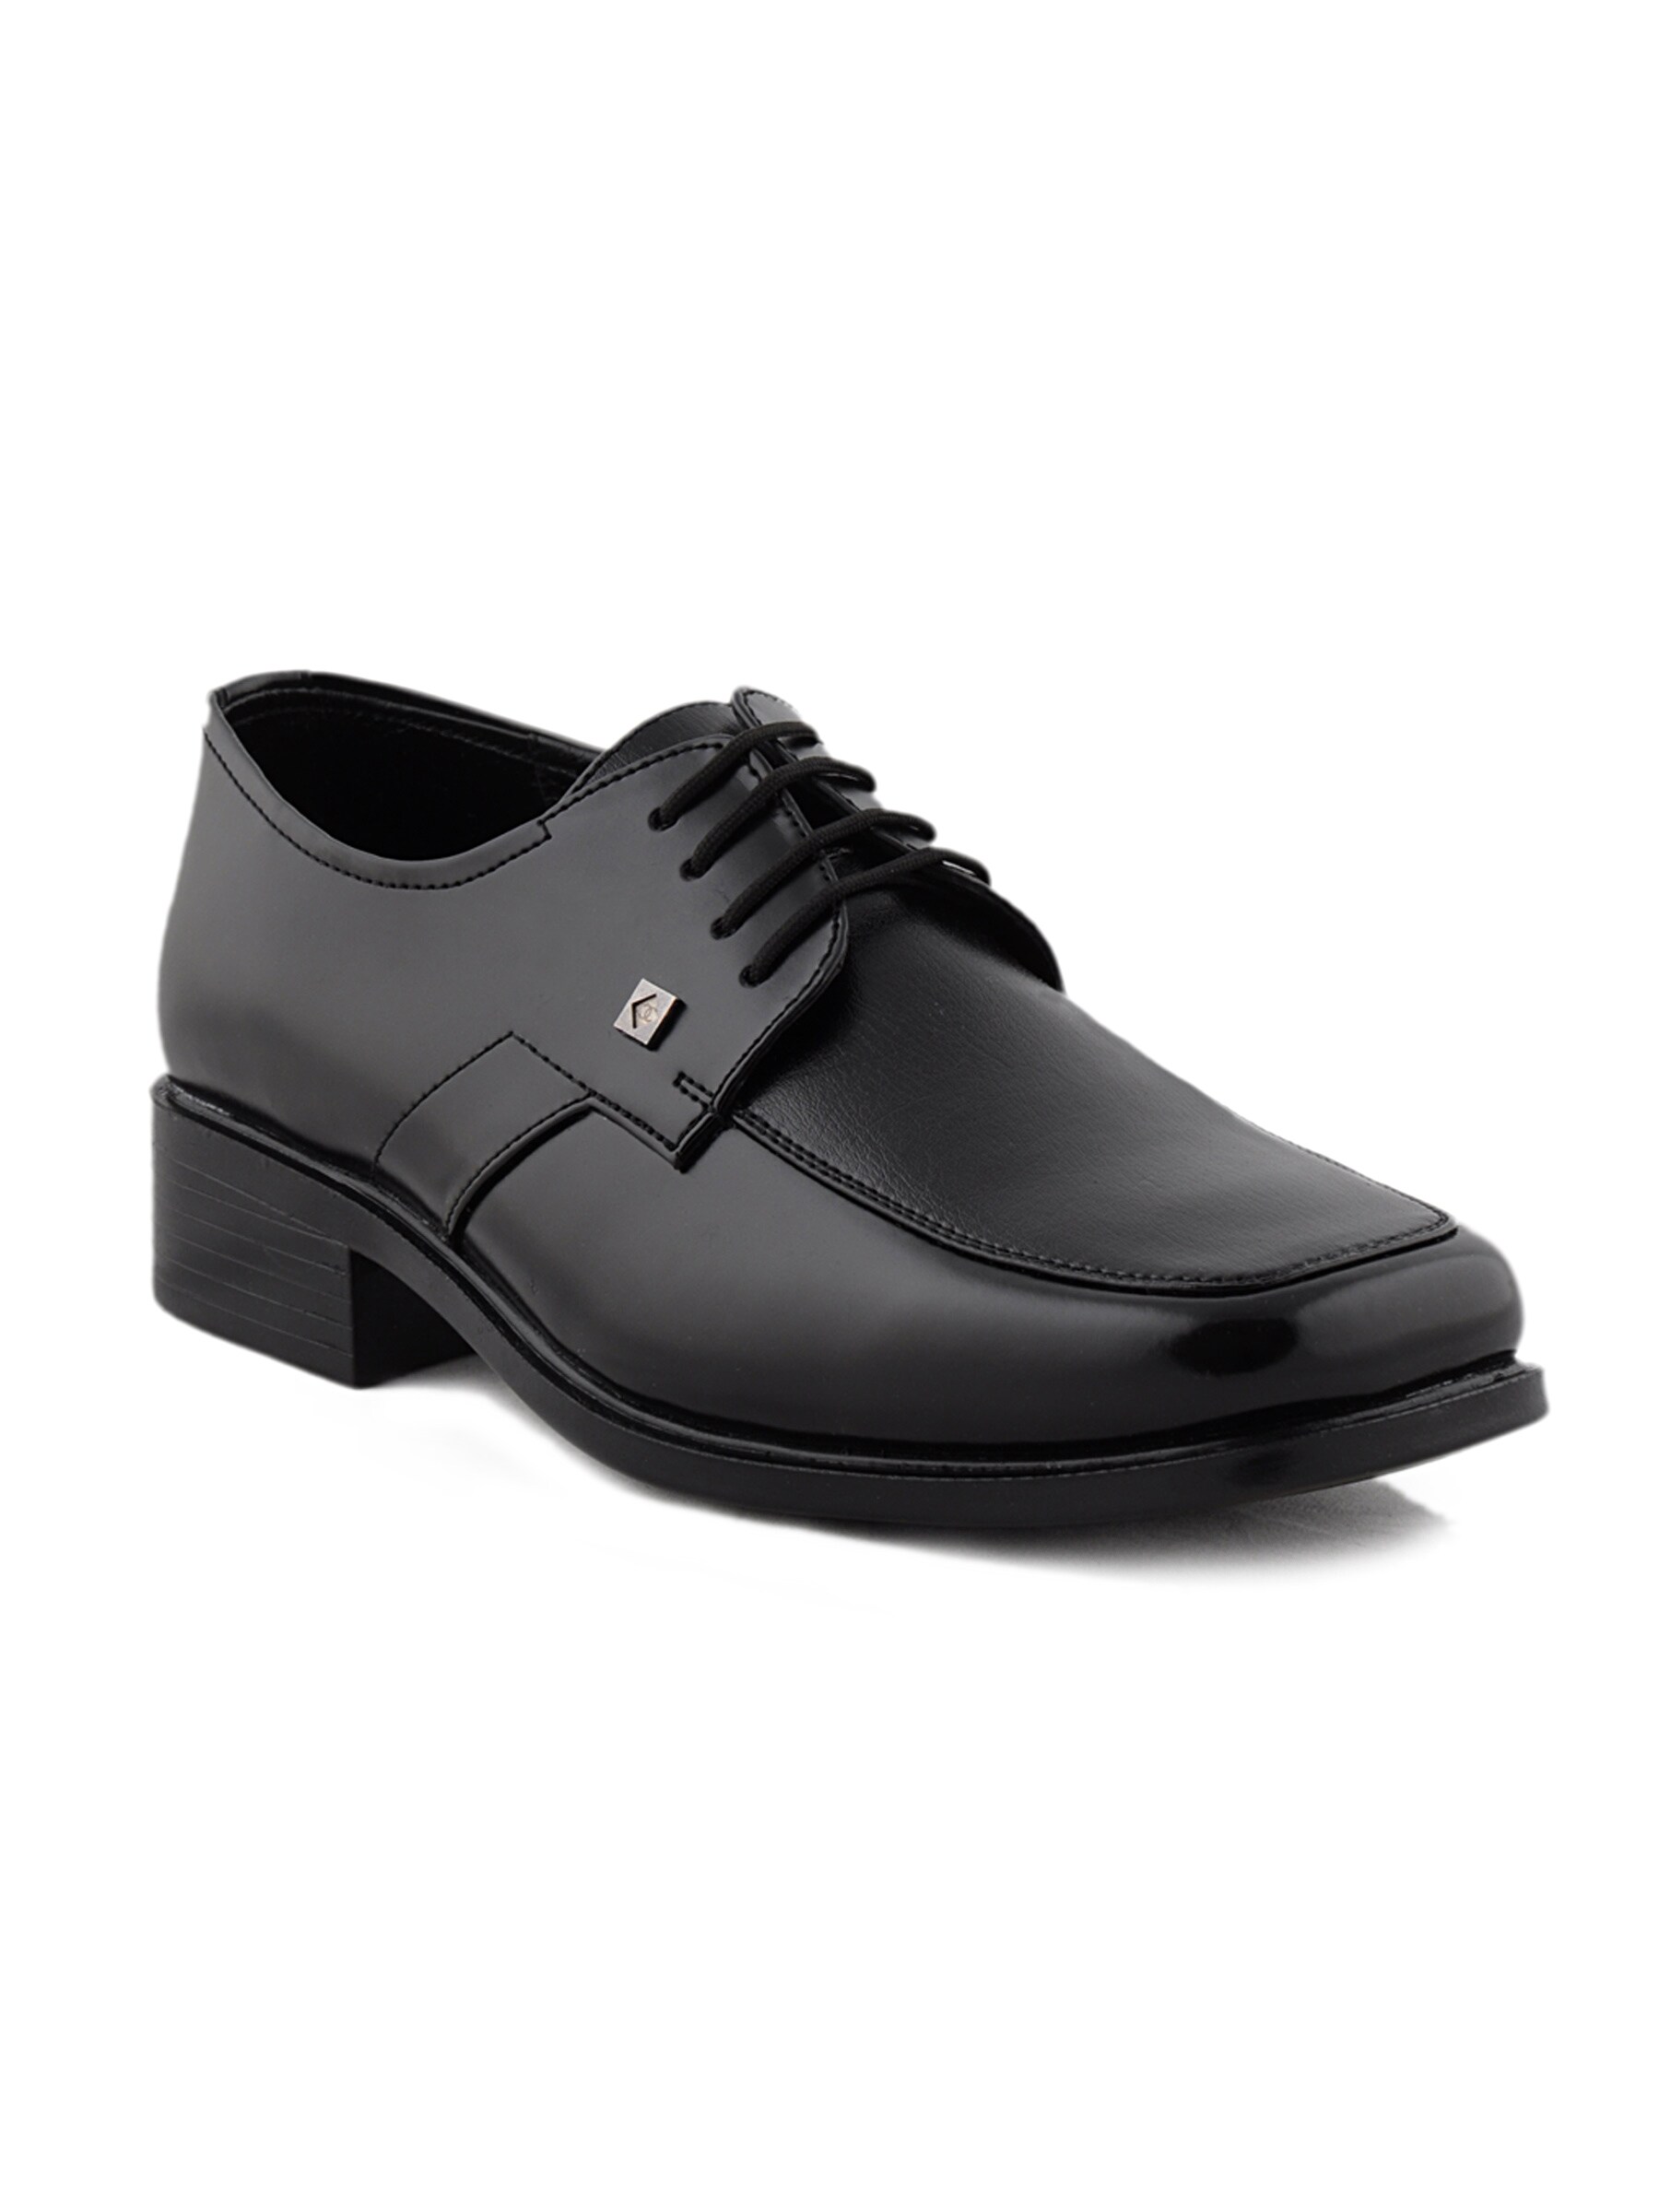 Franco Leone Men Formal Black Formal Shoes